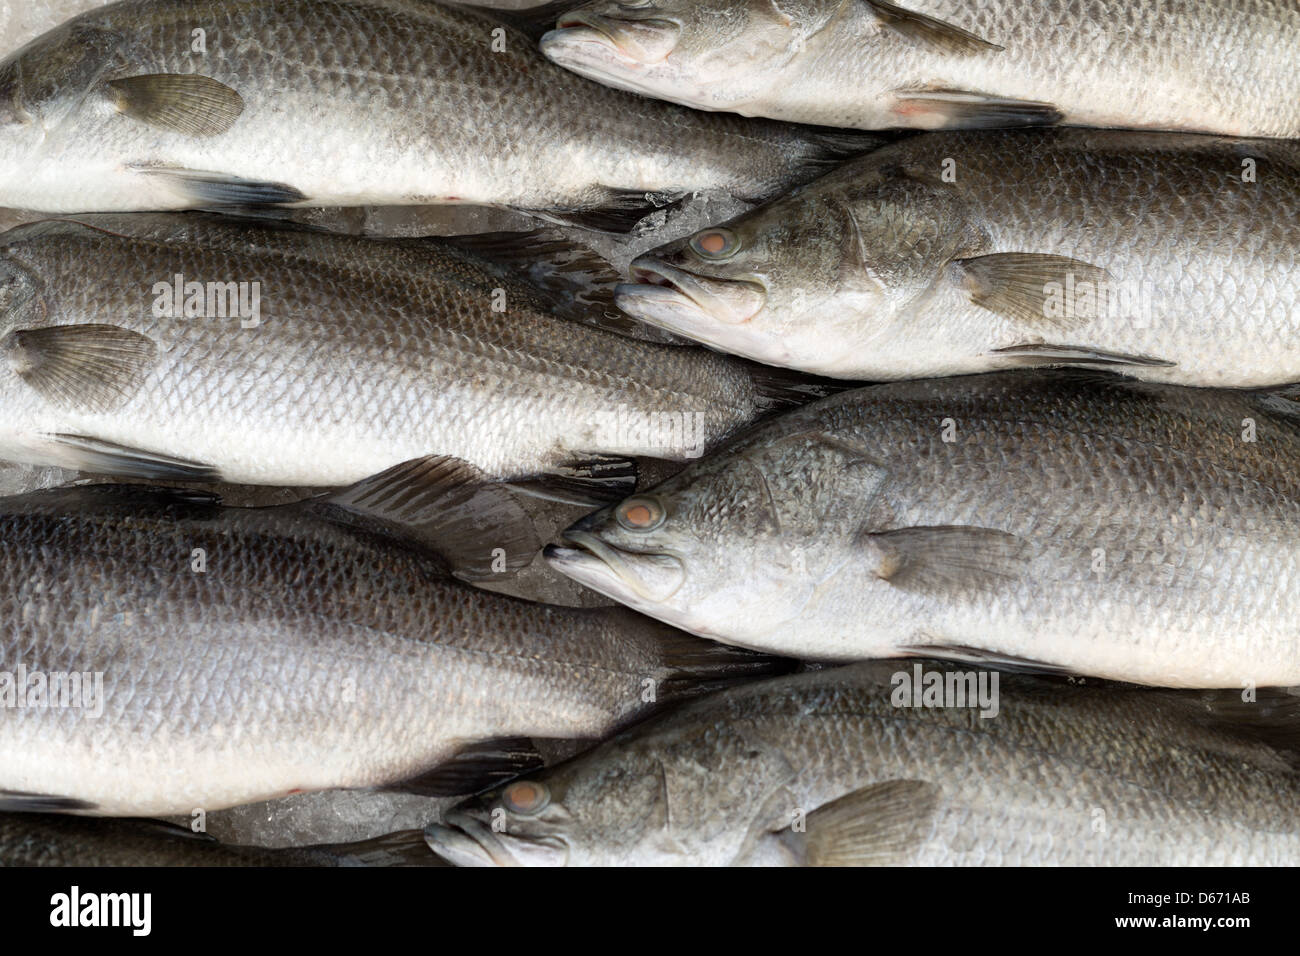 Silver perc White perch fish fresh in the market Stock Photo